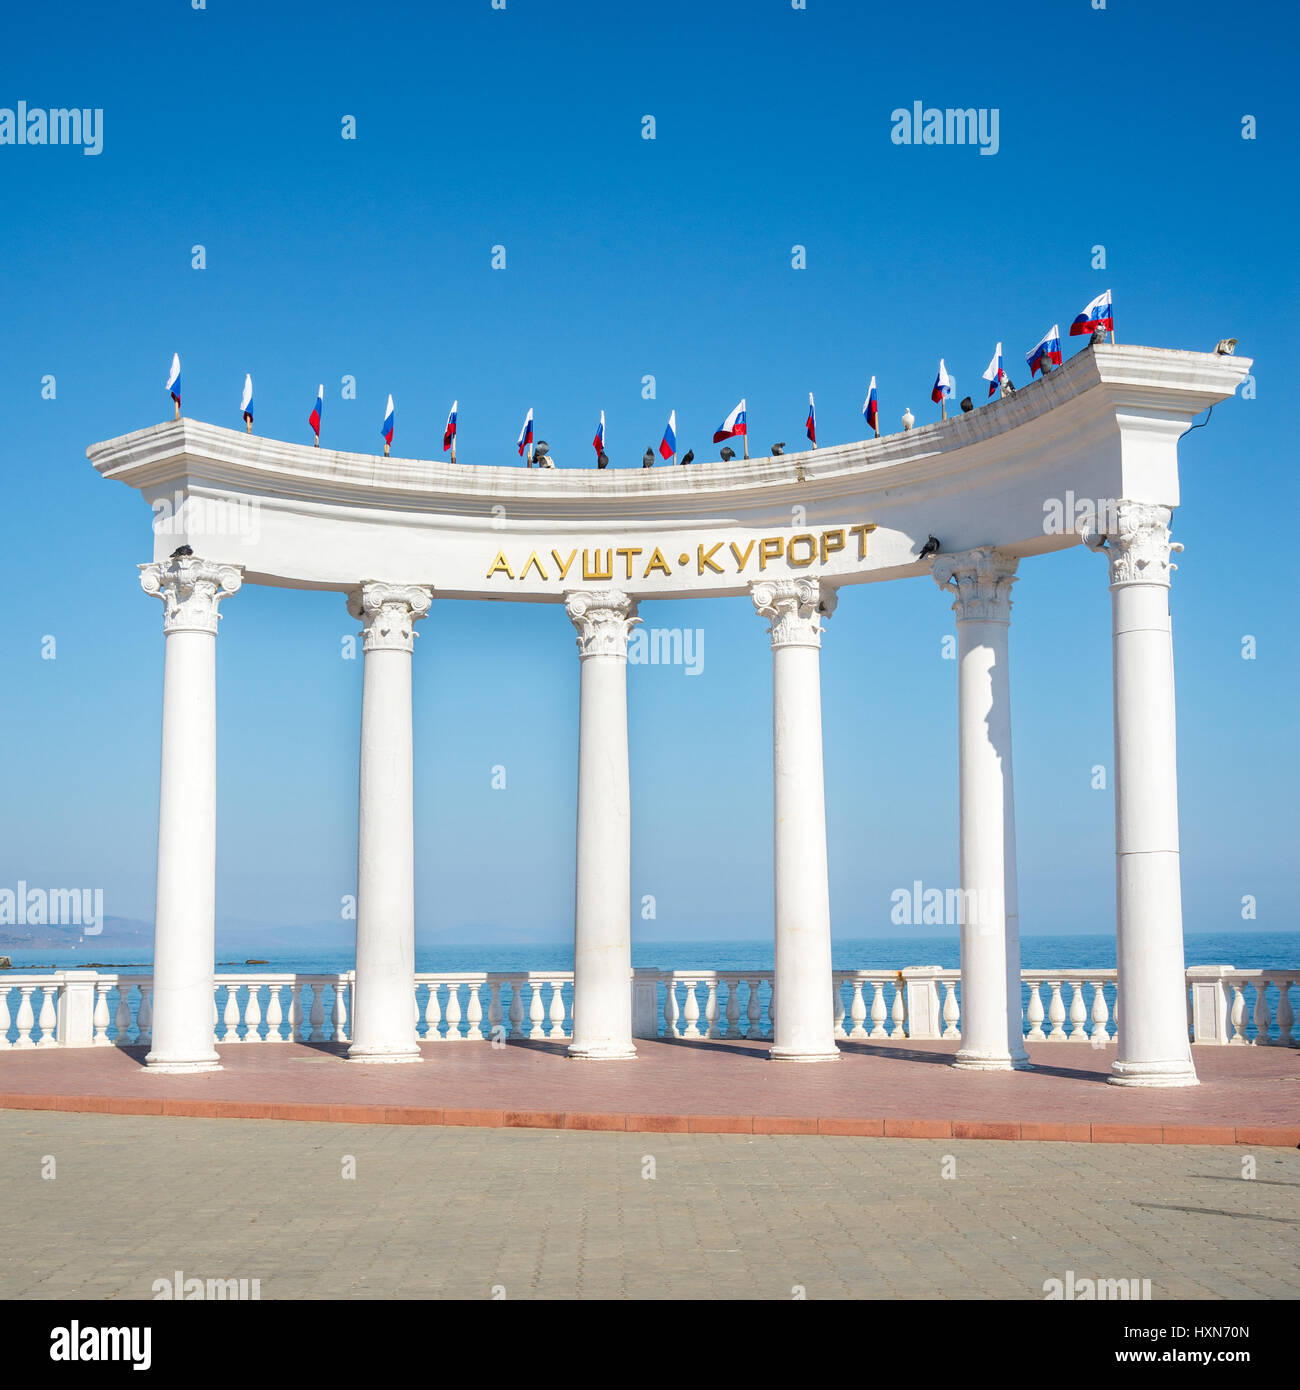 ALUSHTA, RUSSIA - MARCH 18, 2017: The rotunda Alushta resort at the promenade in the city of Alushta, Crimea Stock Photo